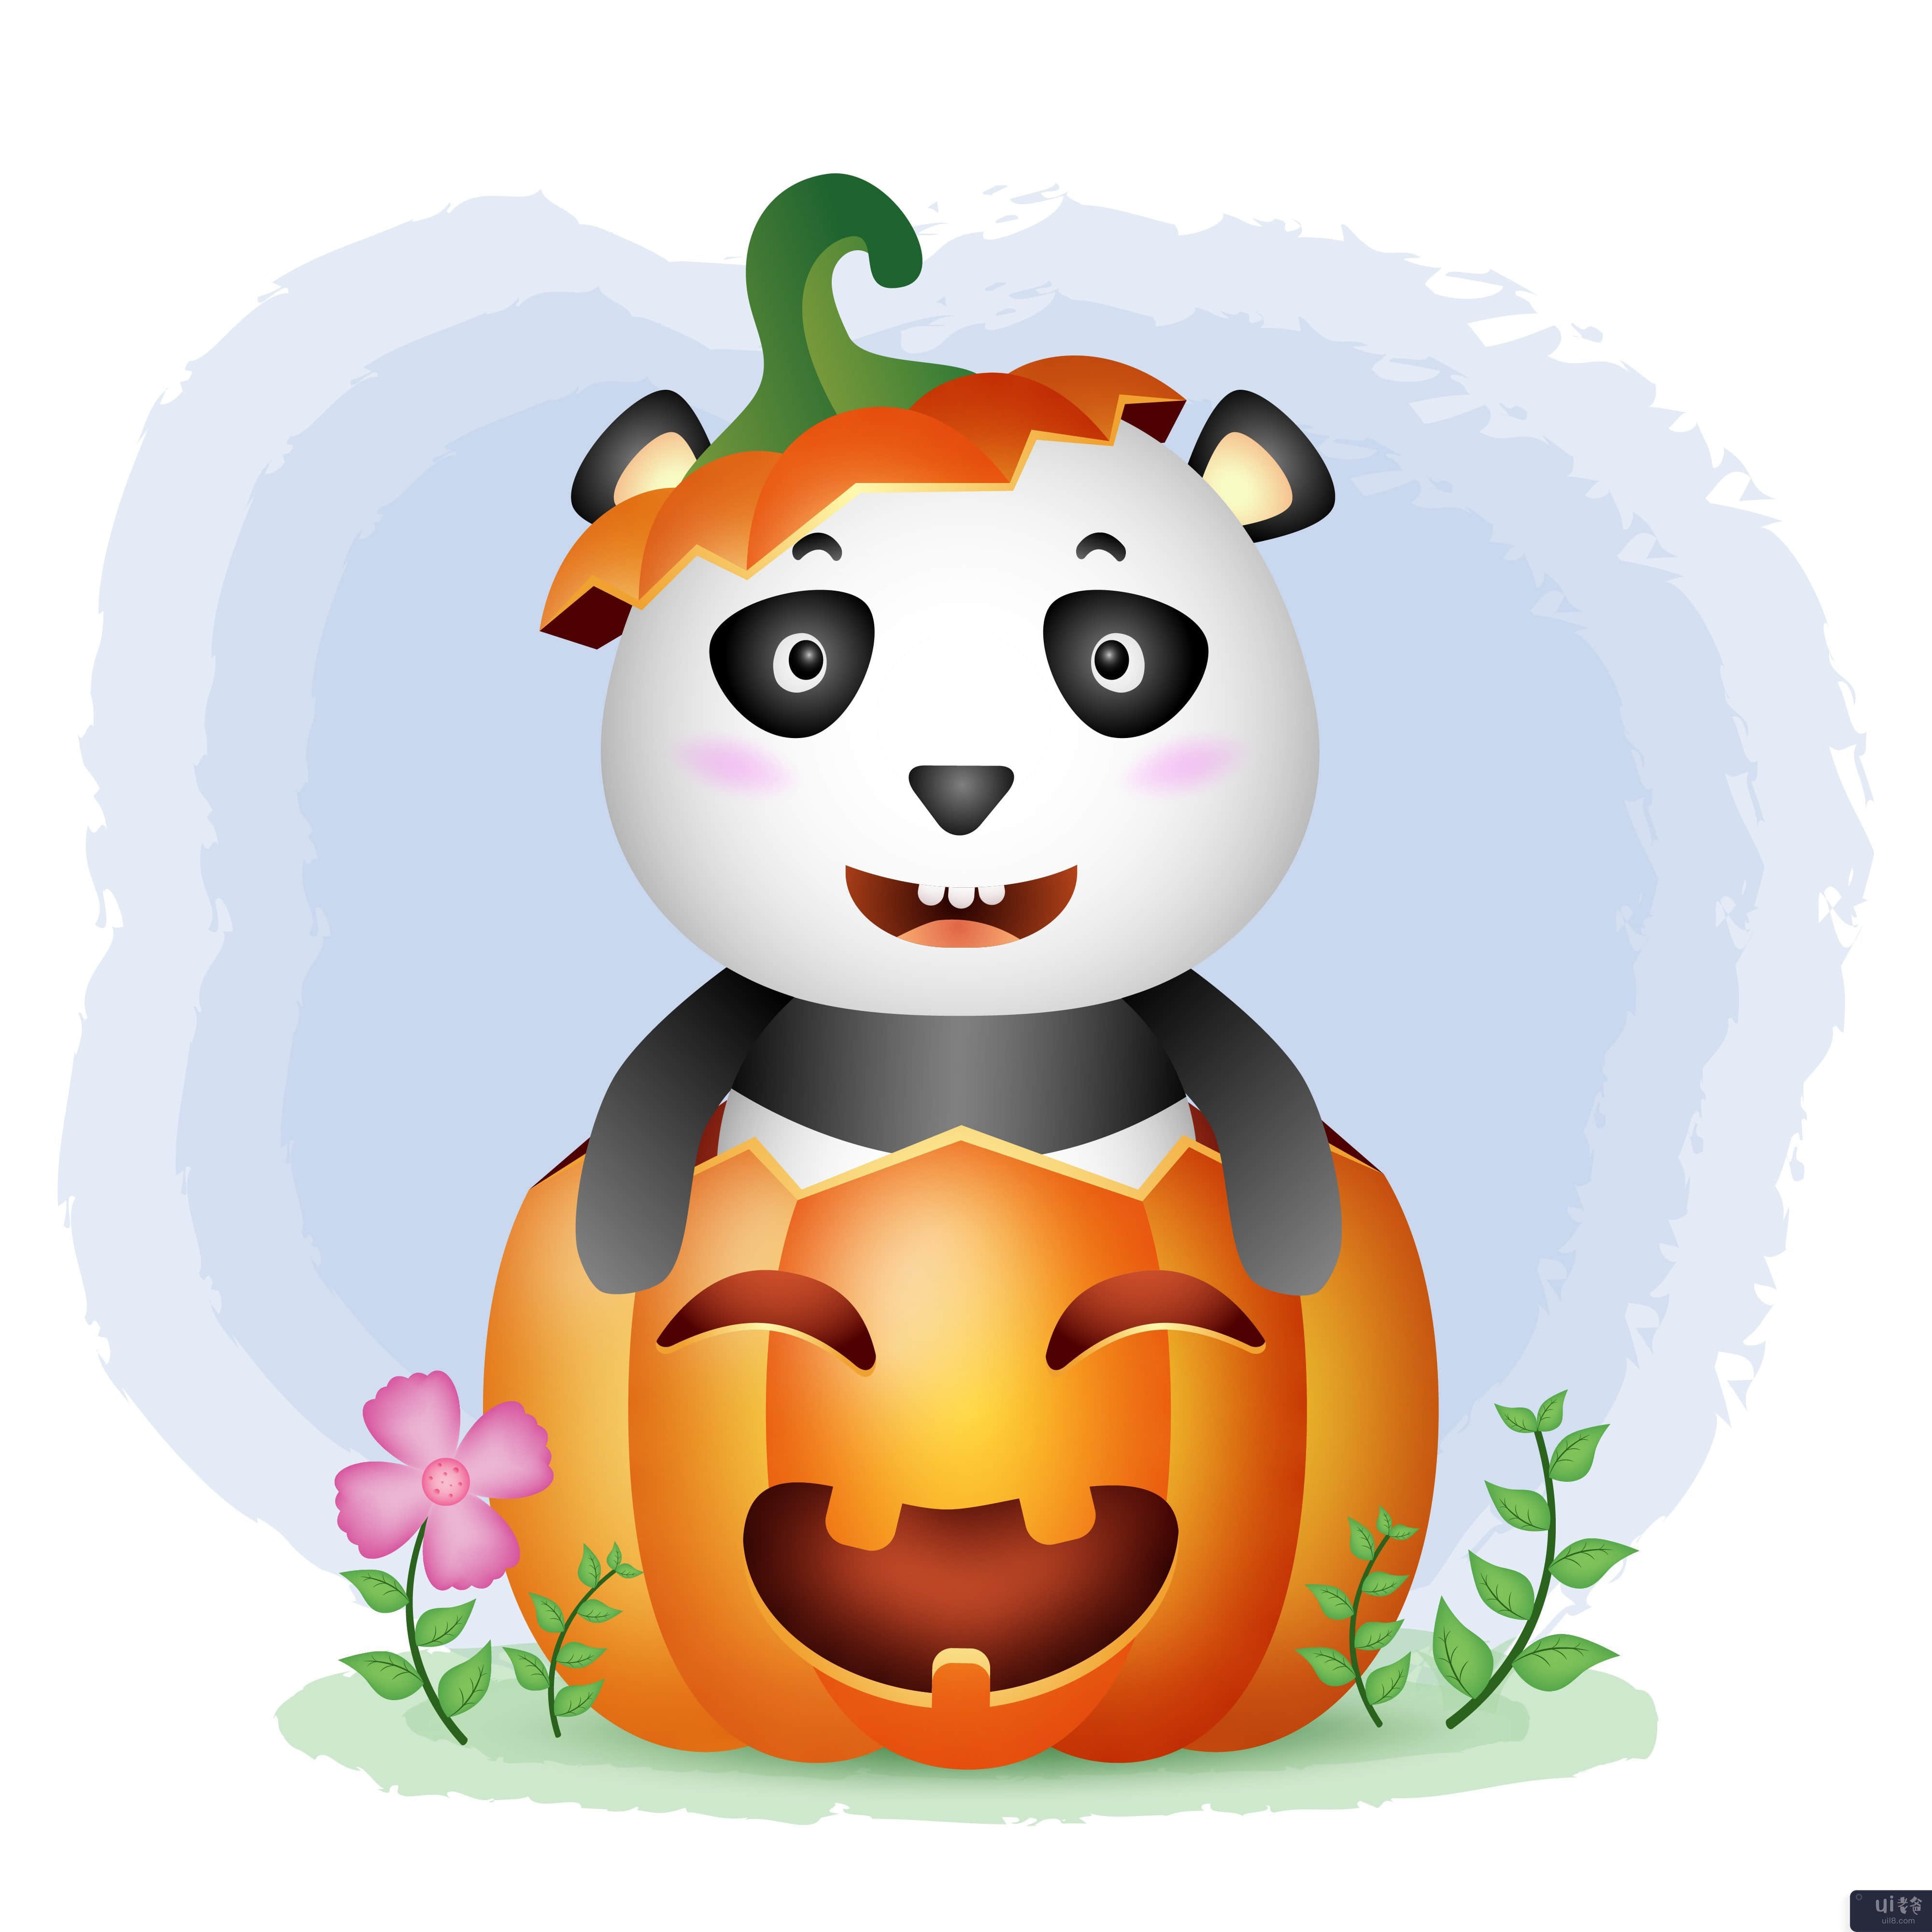 万圣节南瓜里的可爱熊猫(a cute panda in the halloween pumpkin)插图